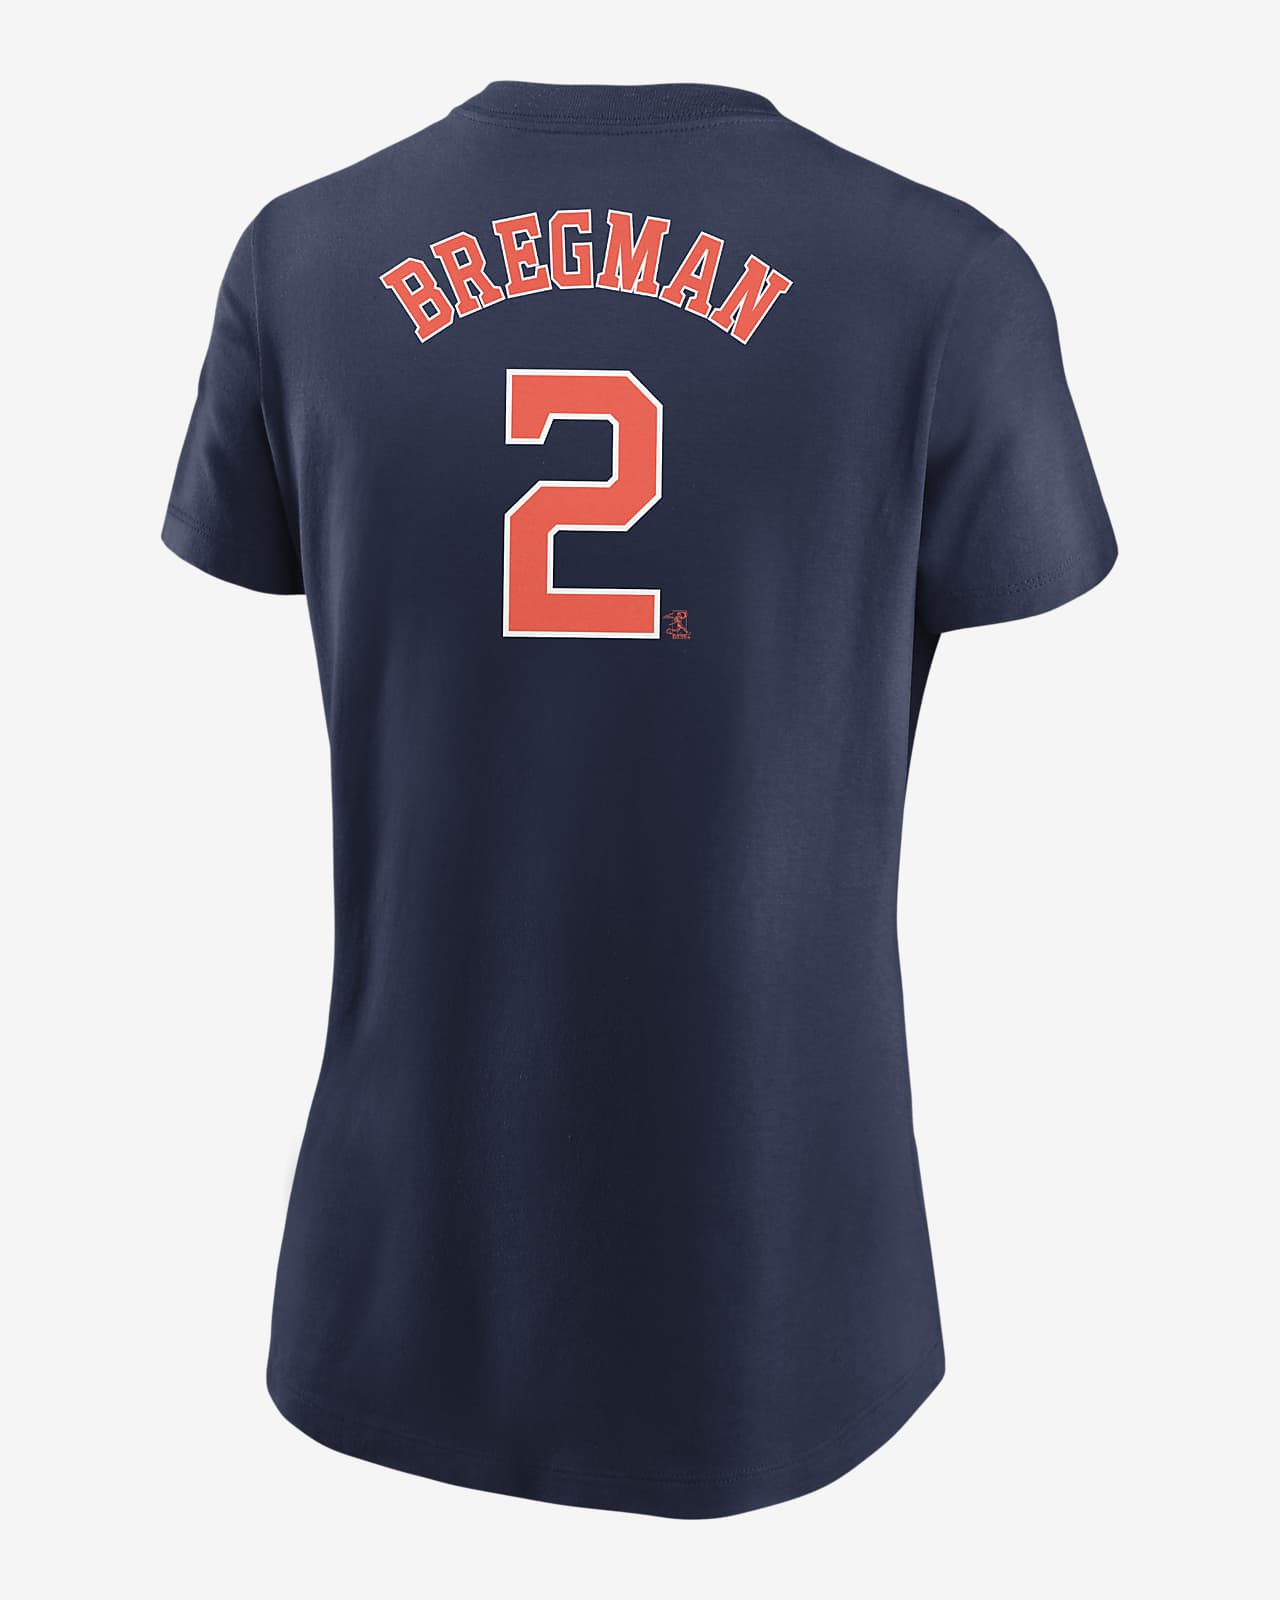 alex bregman t shirt